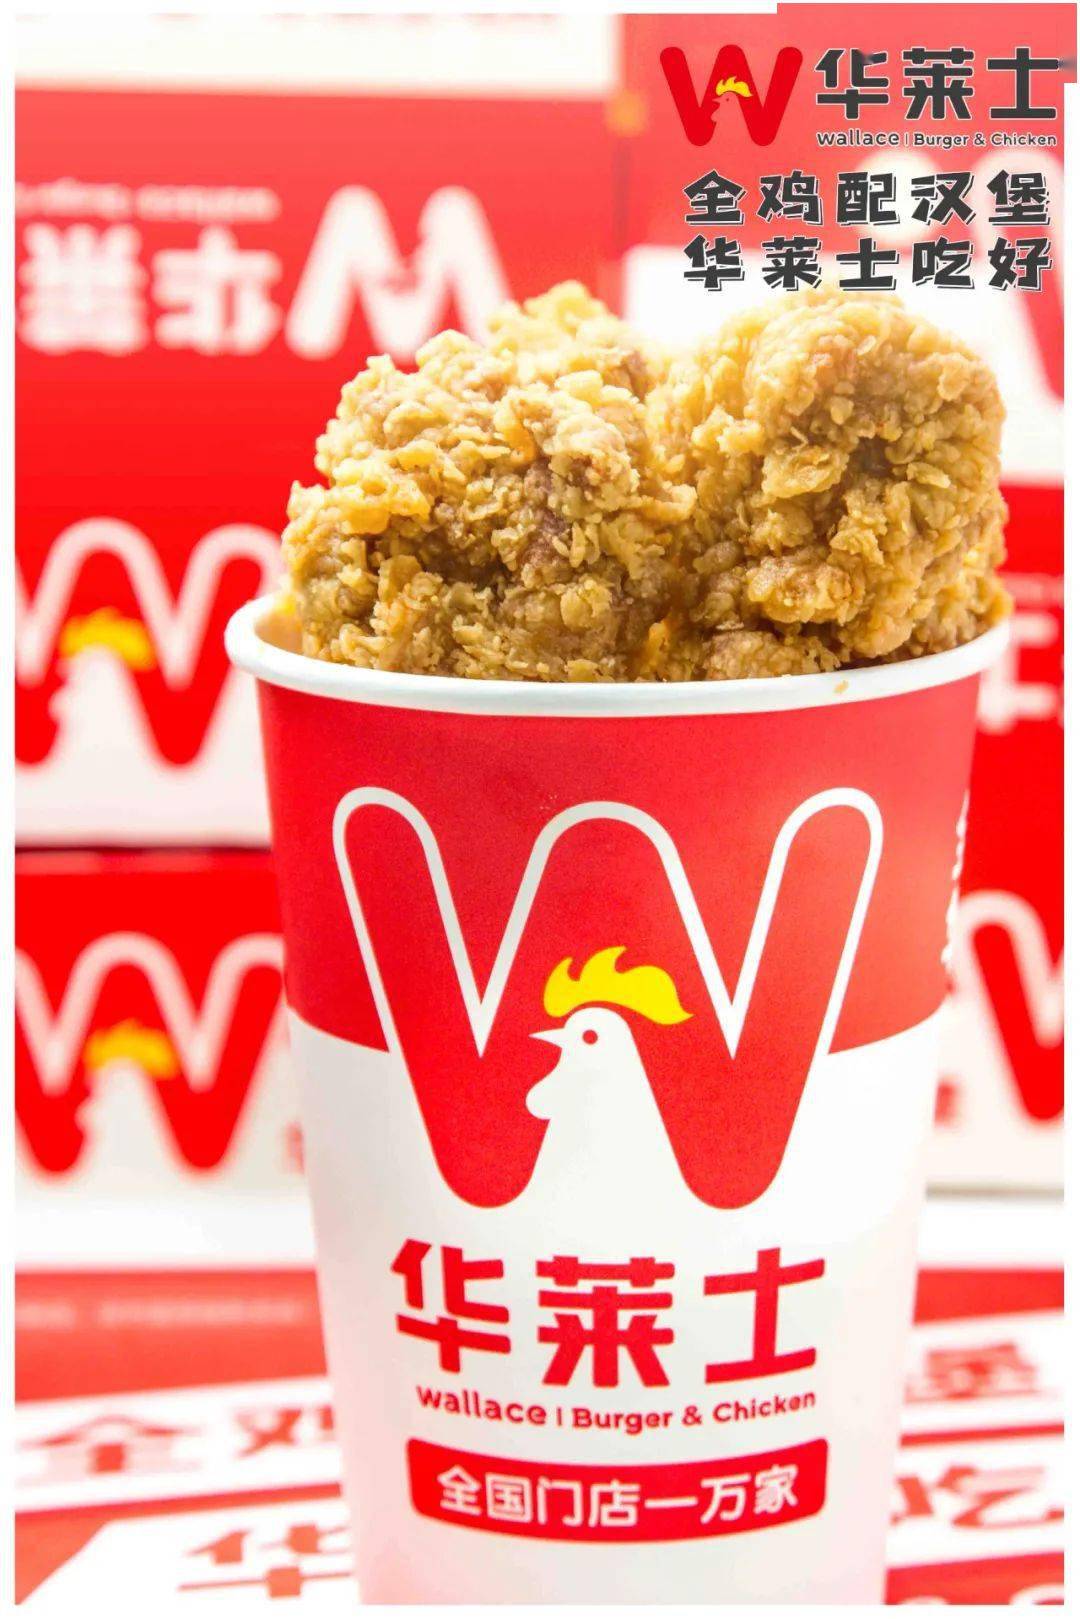 华莱士新品韩式炸鸡桶图片